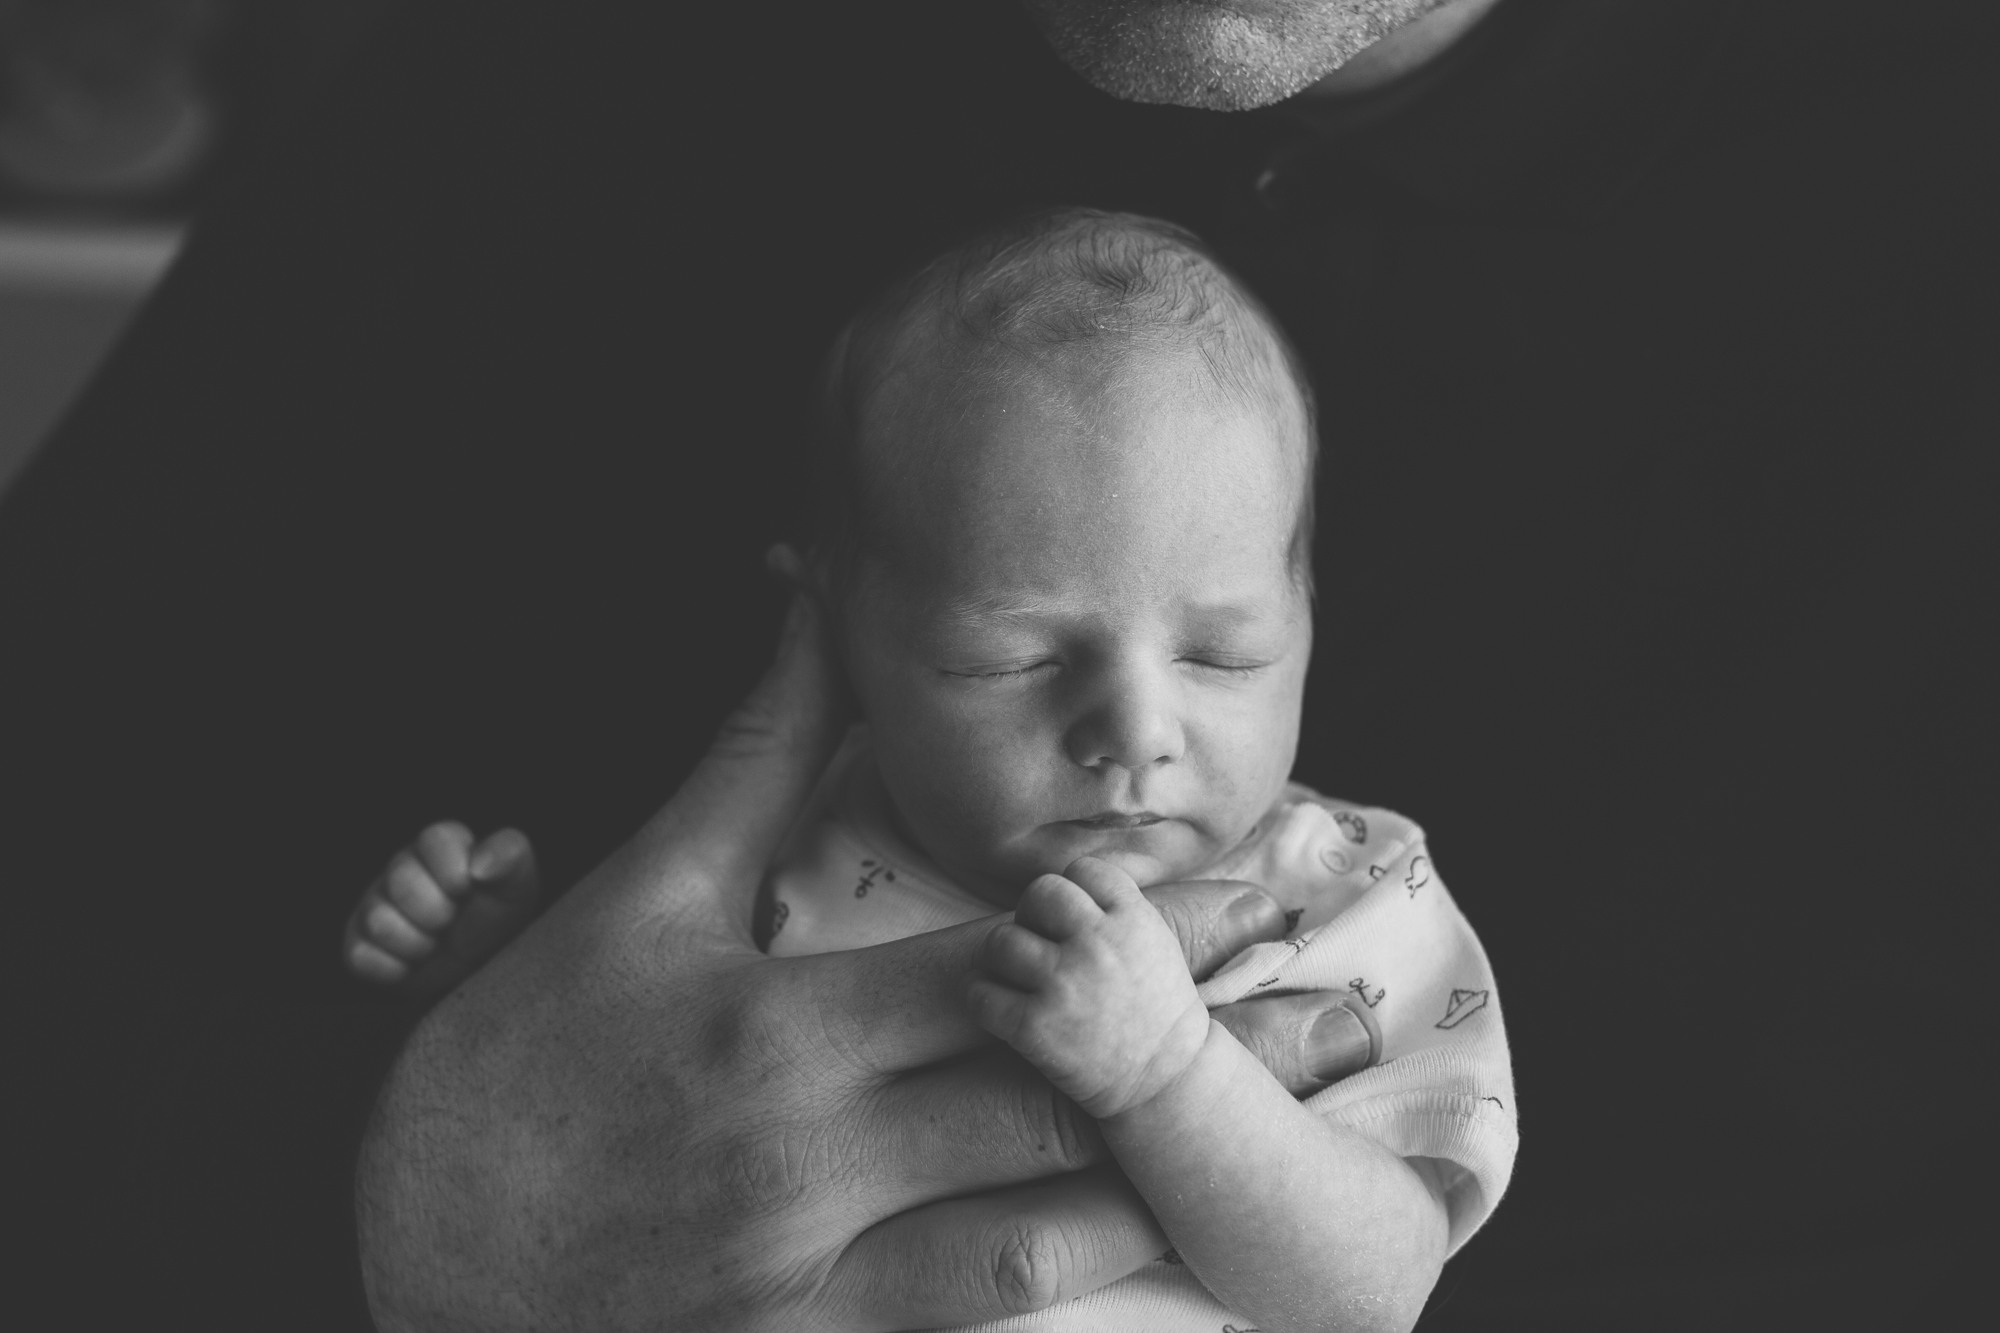 aberdeen newborn photographer, newborn photographer Aberdeen